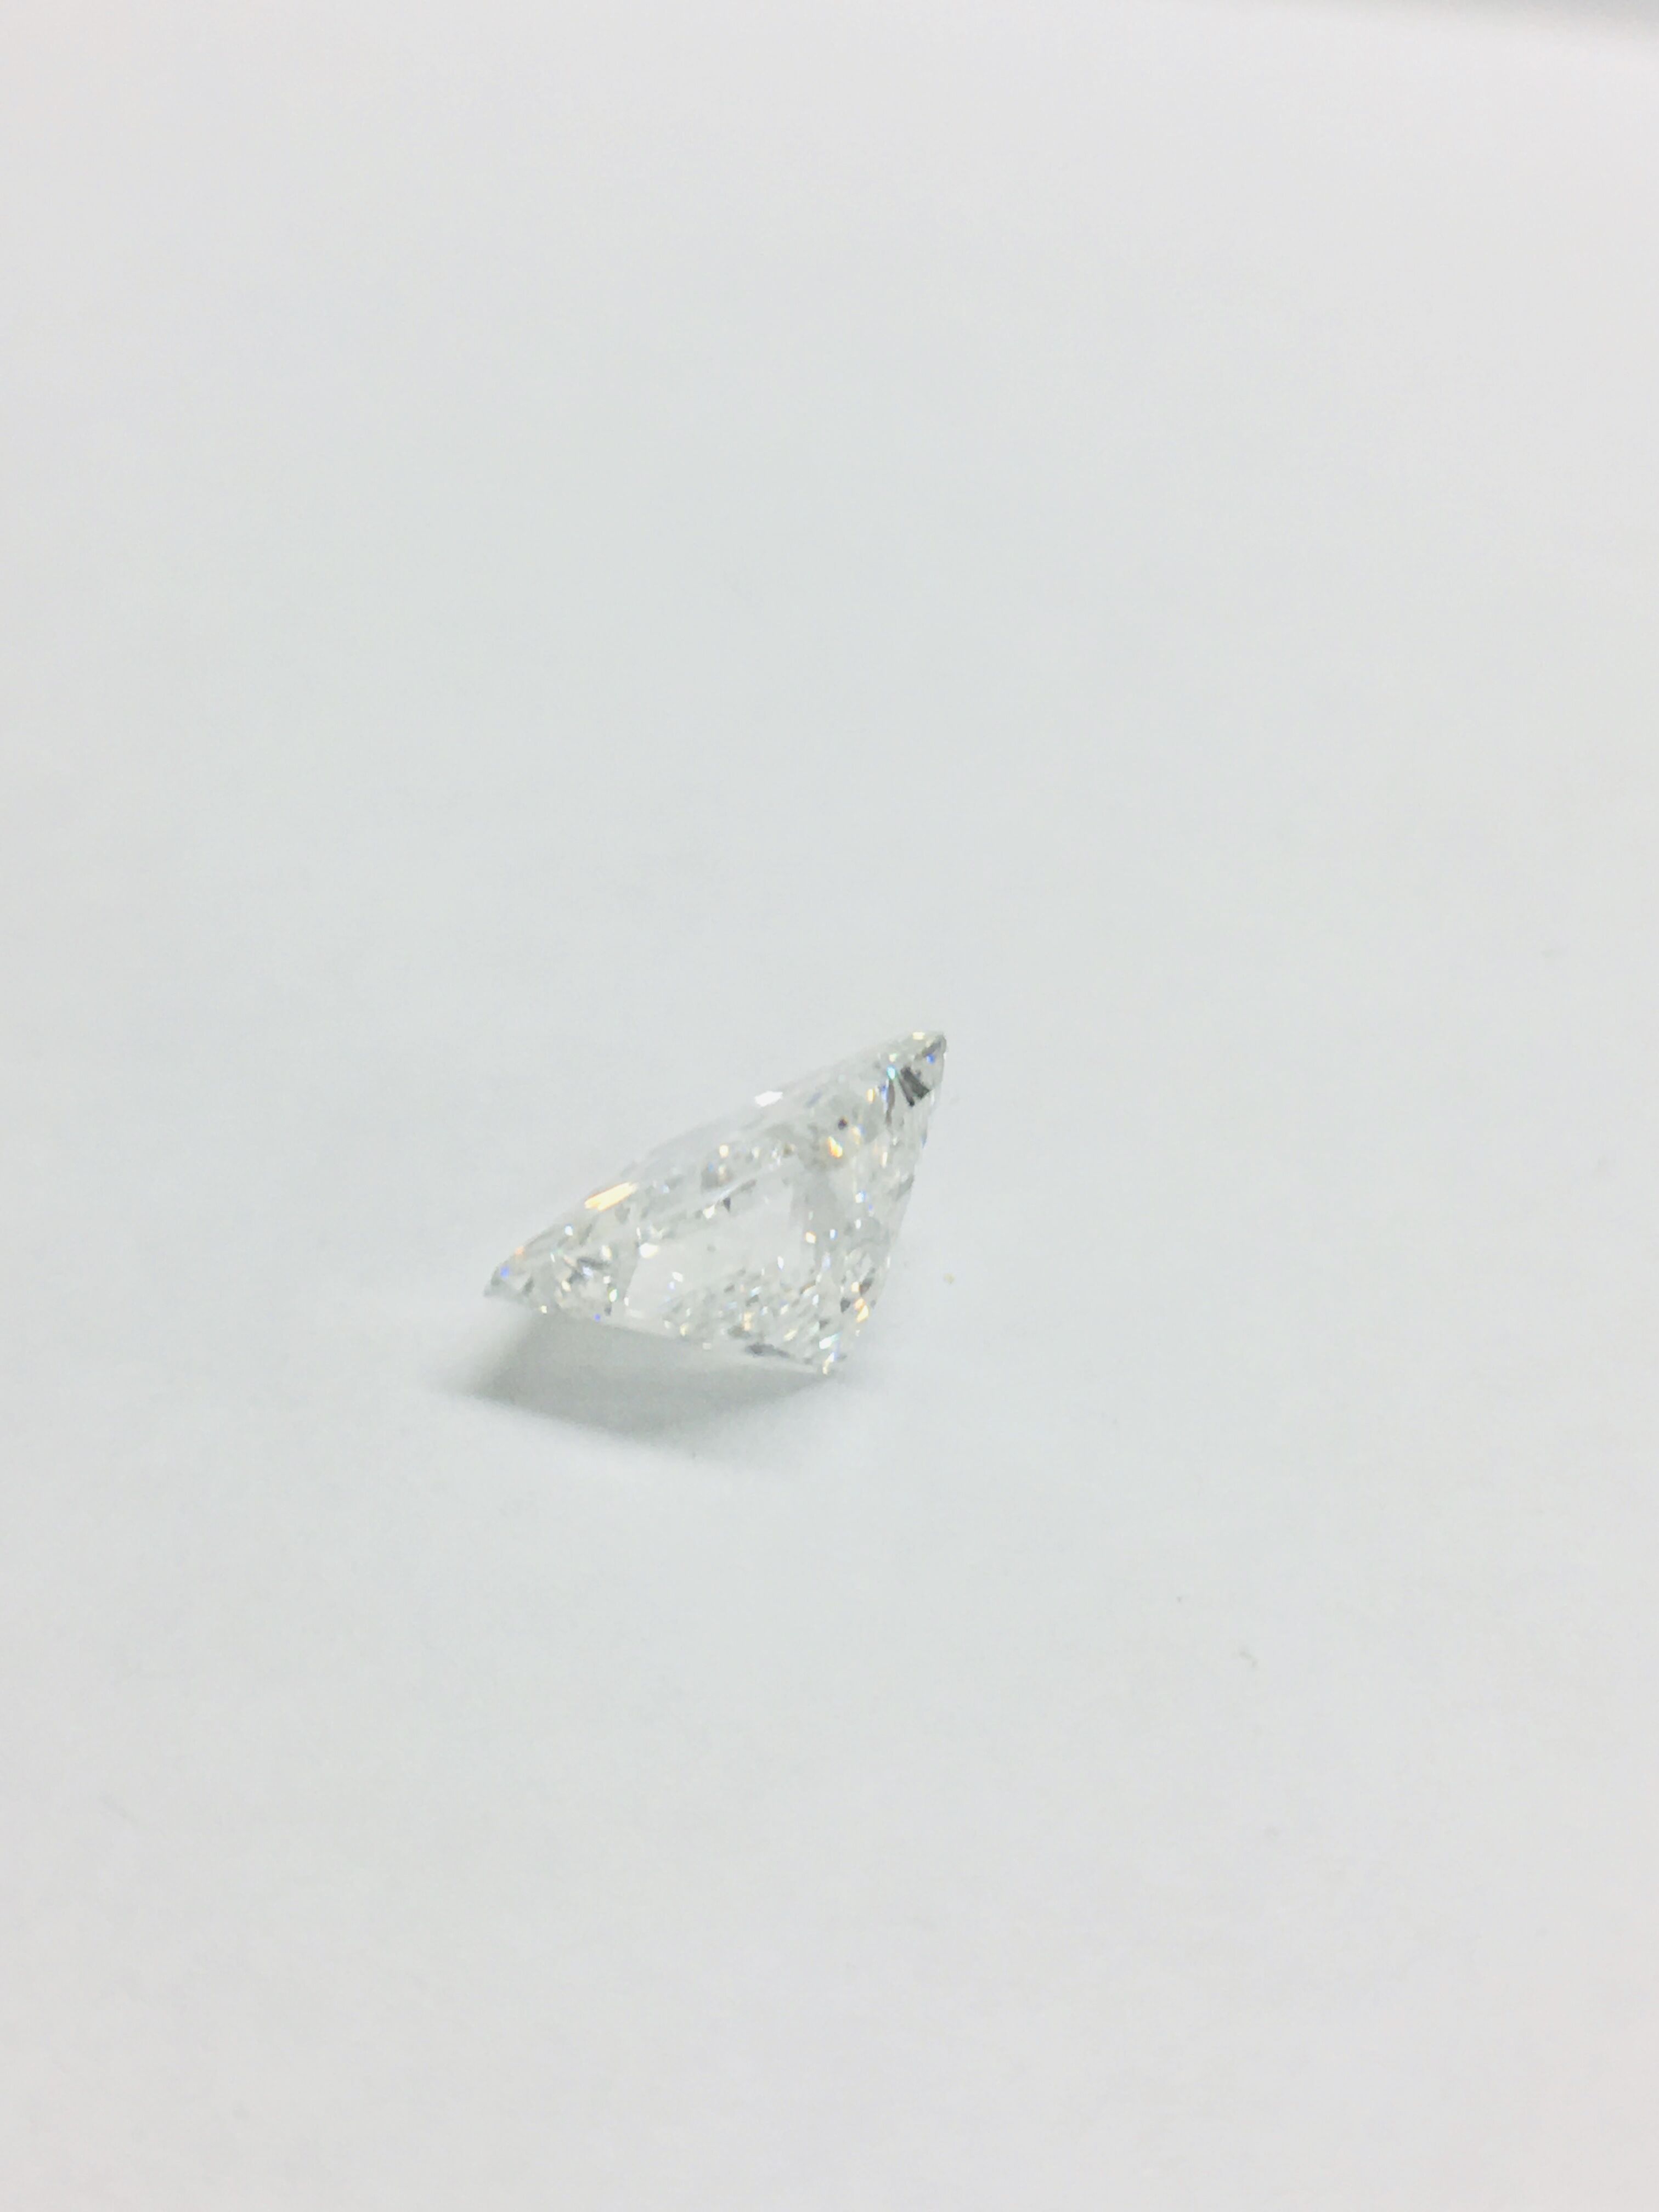 1.95ct Princess cut Diamond - Image 12 of 42